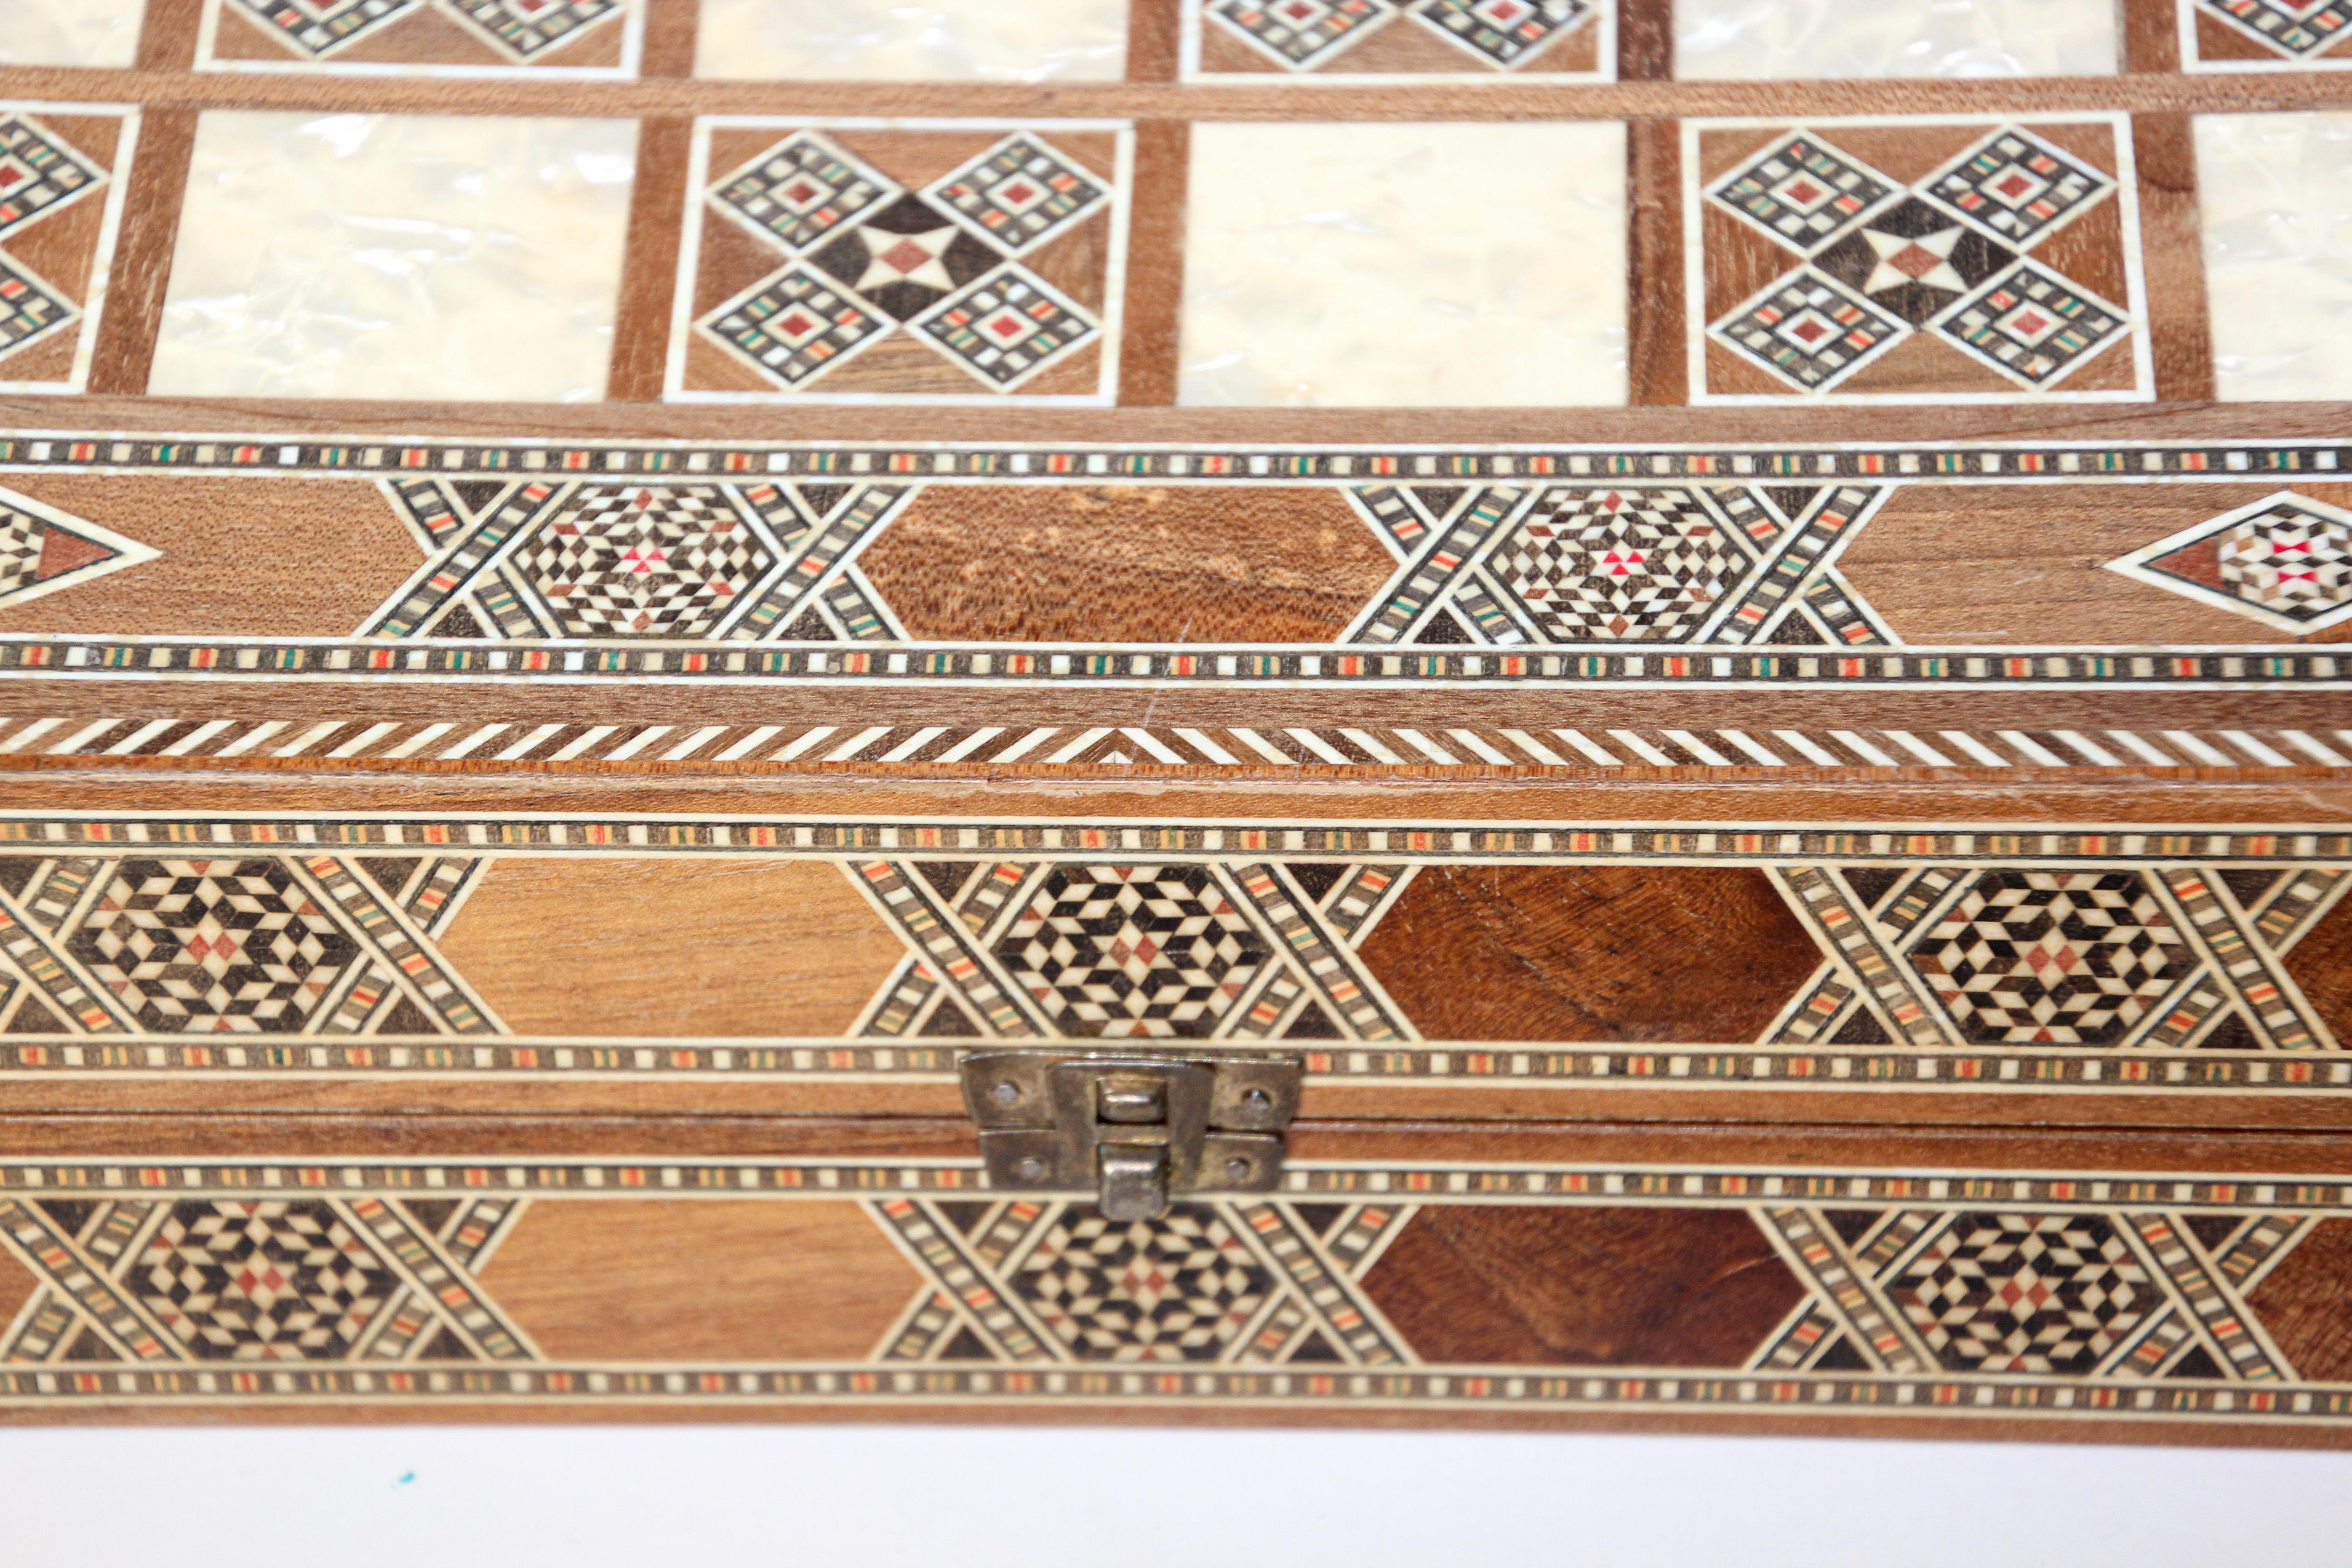 backgammon arabic name